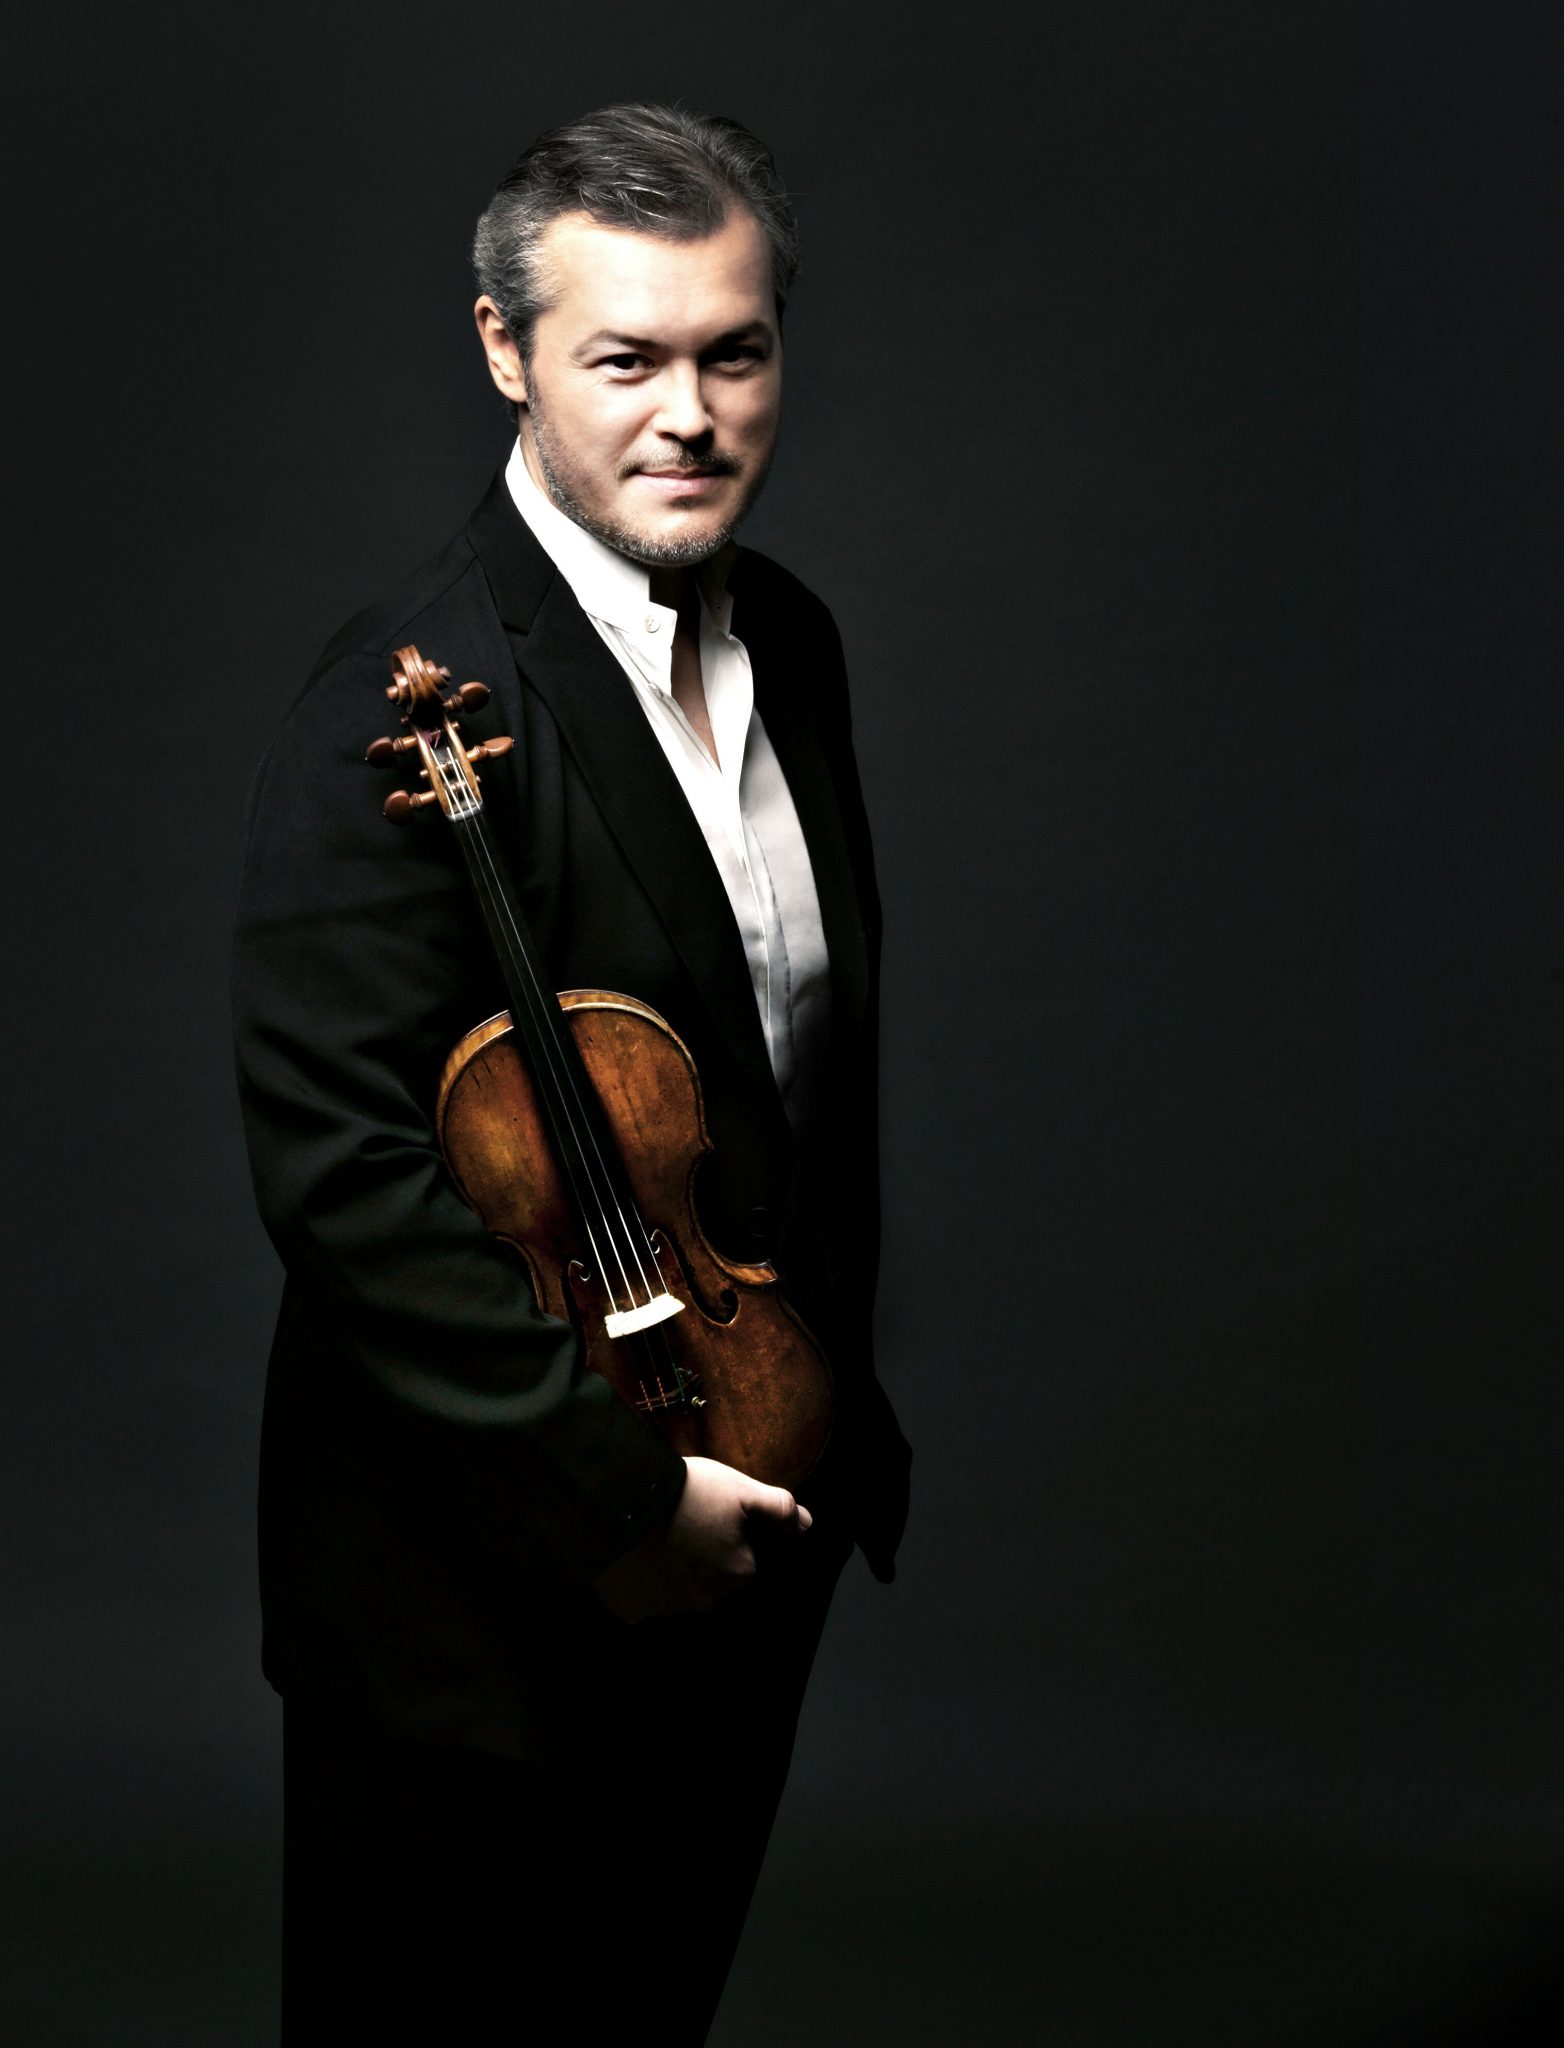 Pasión, poesía y sensibilidad: el violinista Repin ciclo de conciertos - Forbes España